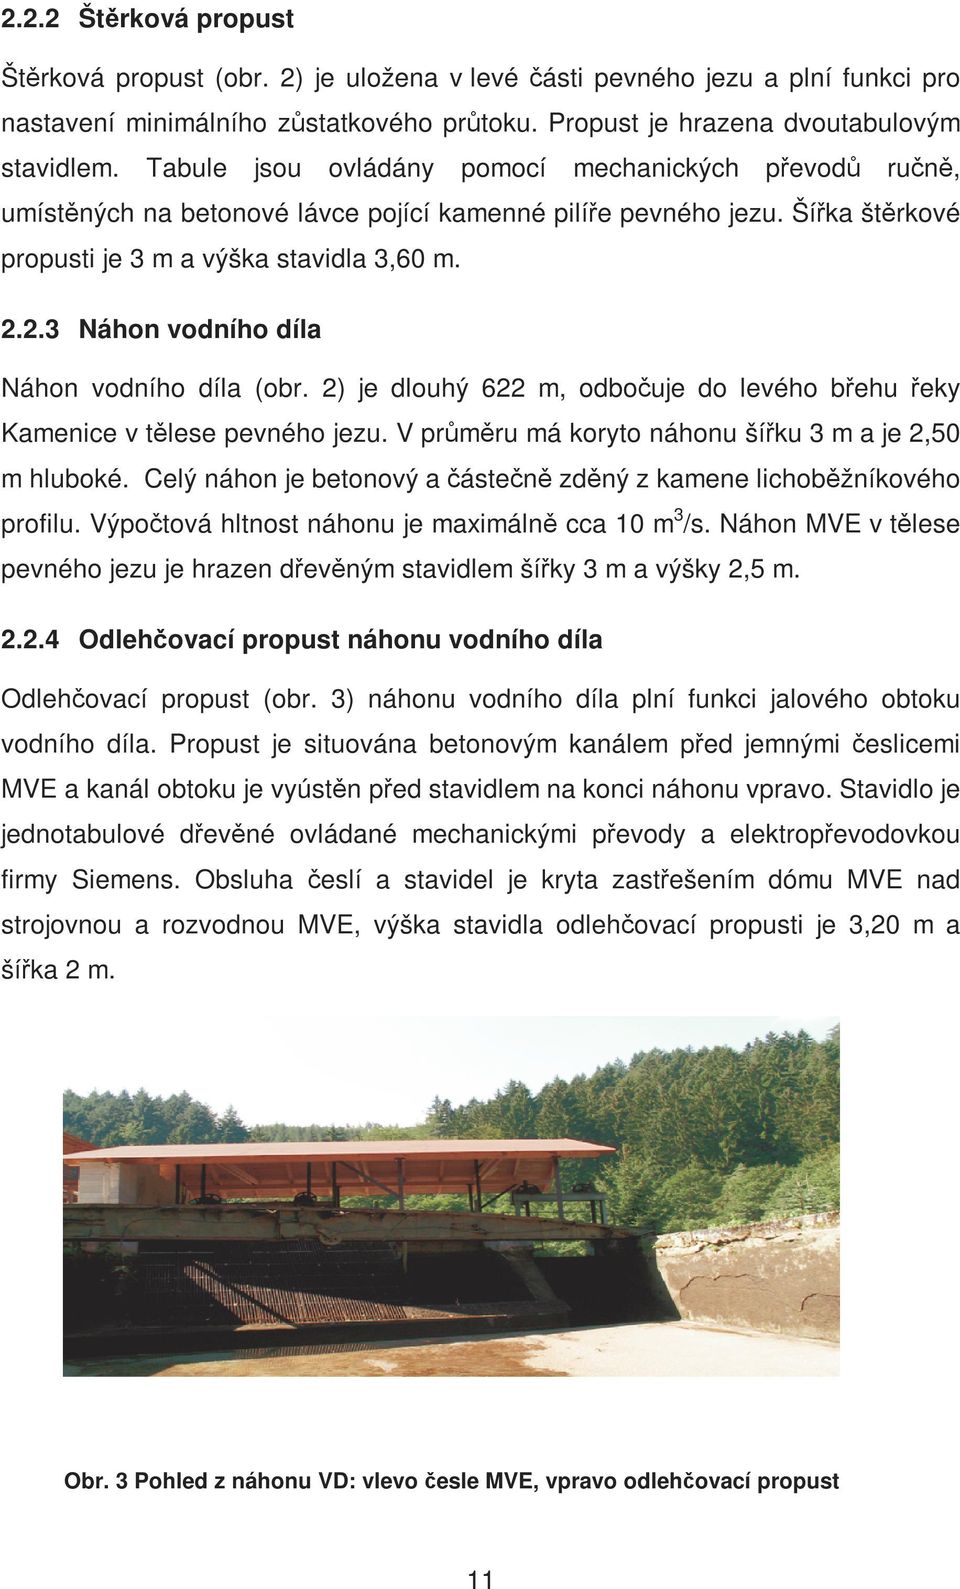 2.3 Náhon vodního díla Náhon vodního díla (obr. 2) je dlouhý 622 m, odbočuje do levého břehu řeky Kamenice v tělese pevného jezu. V průměru má koryto náhonu šířku 3 m a je 2,50 m hluboké.